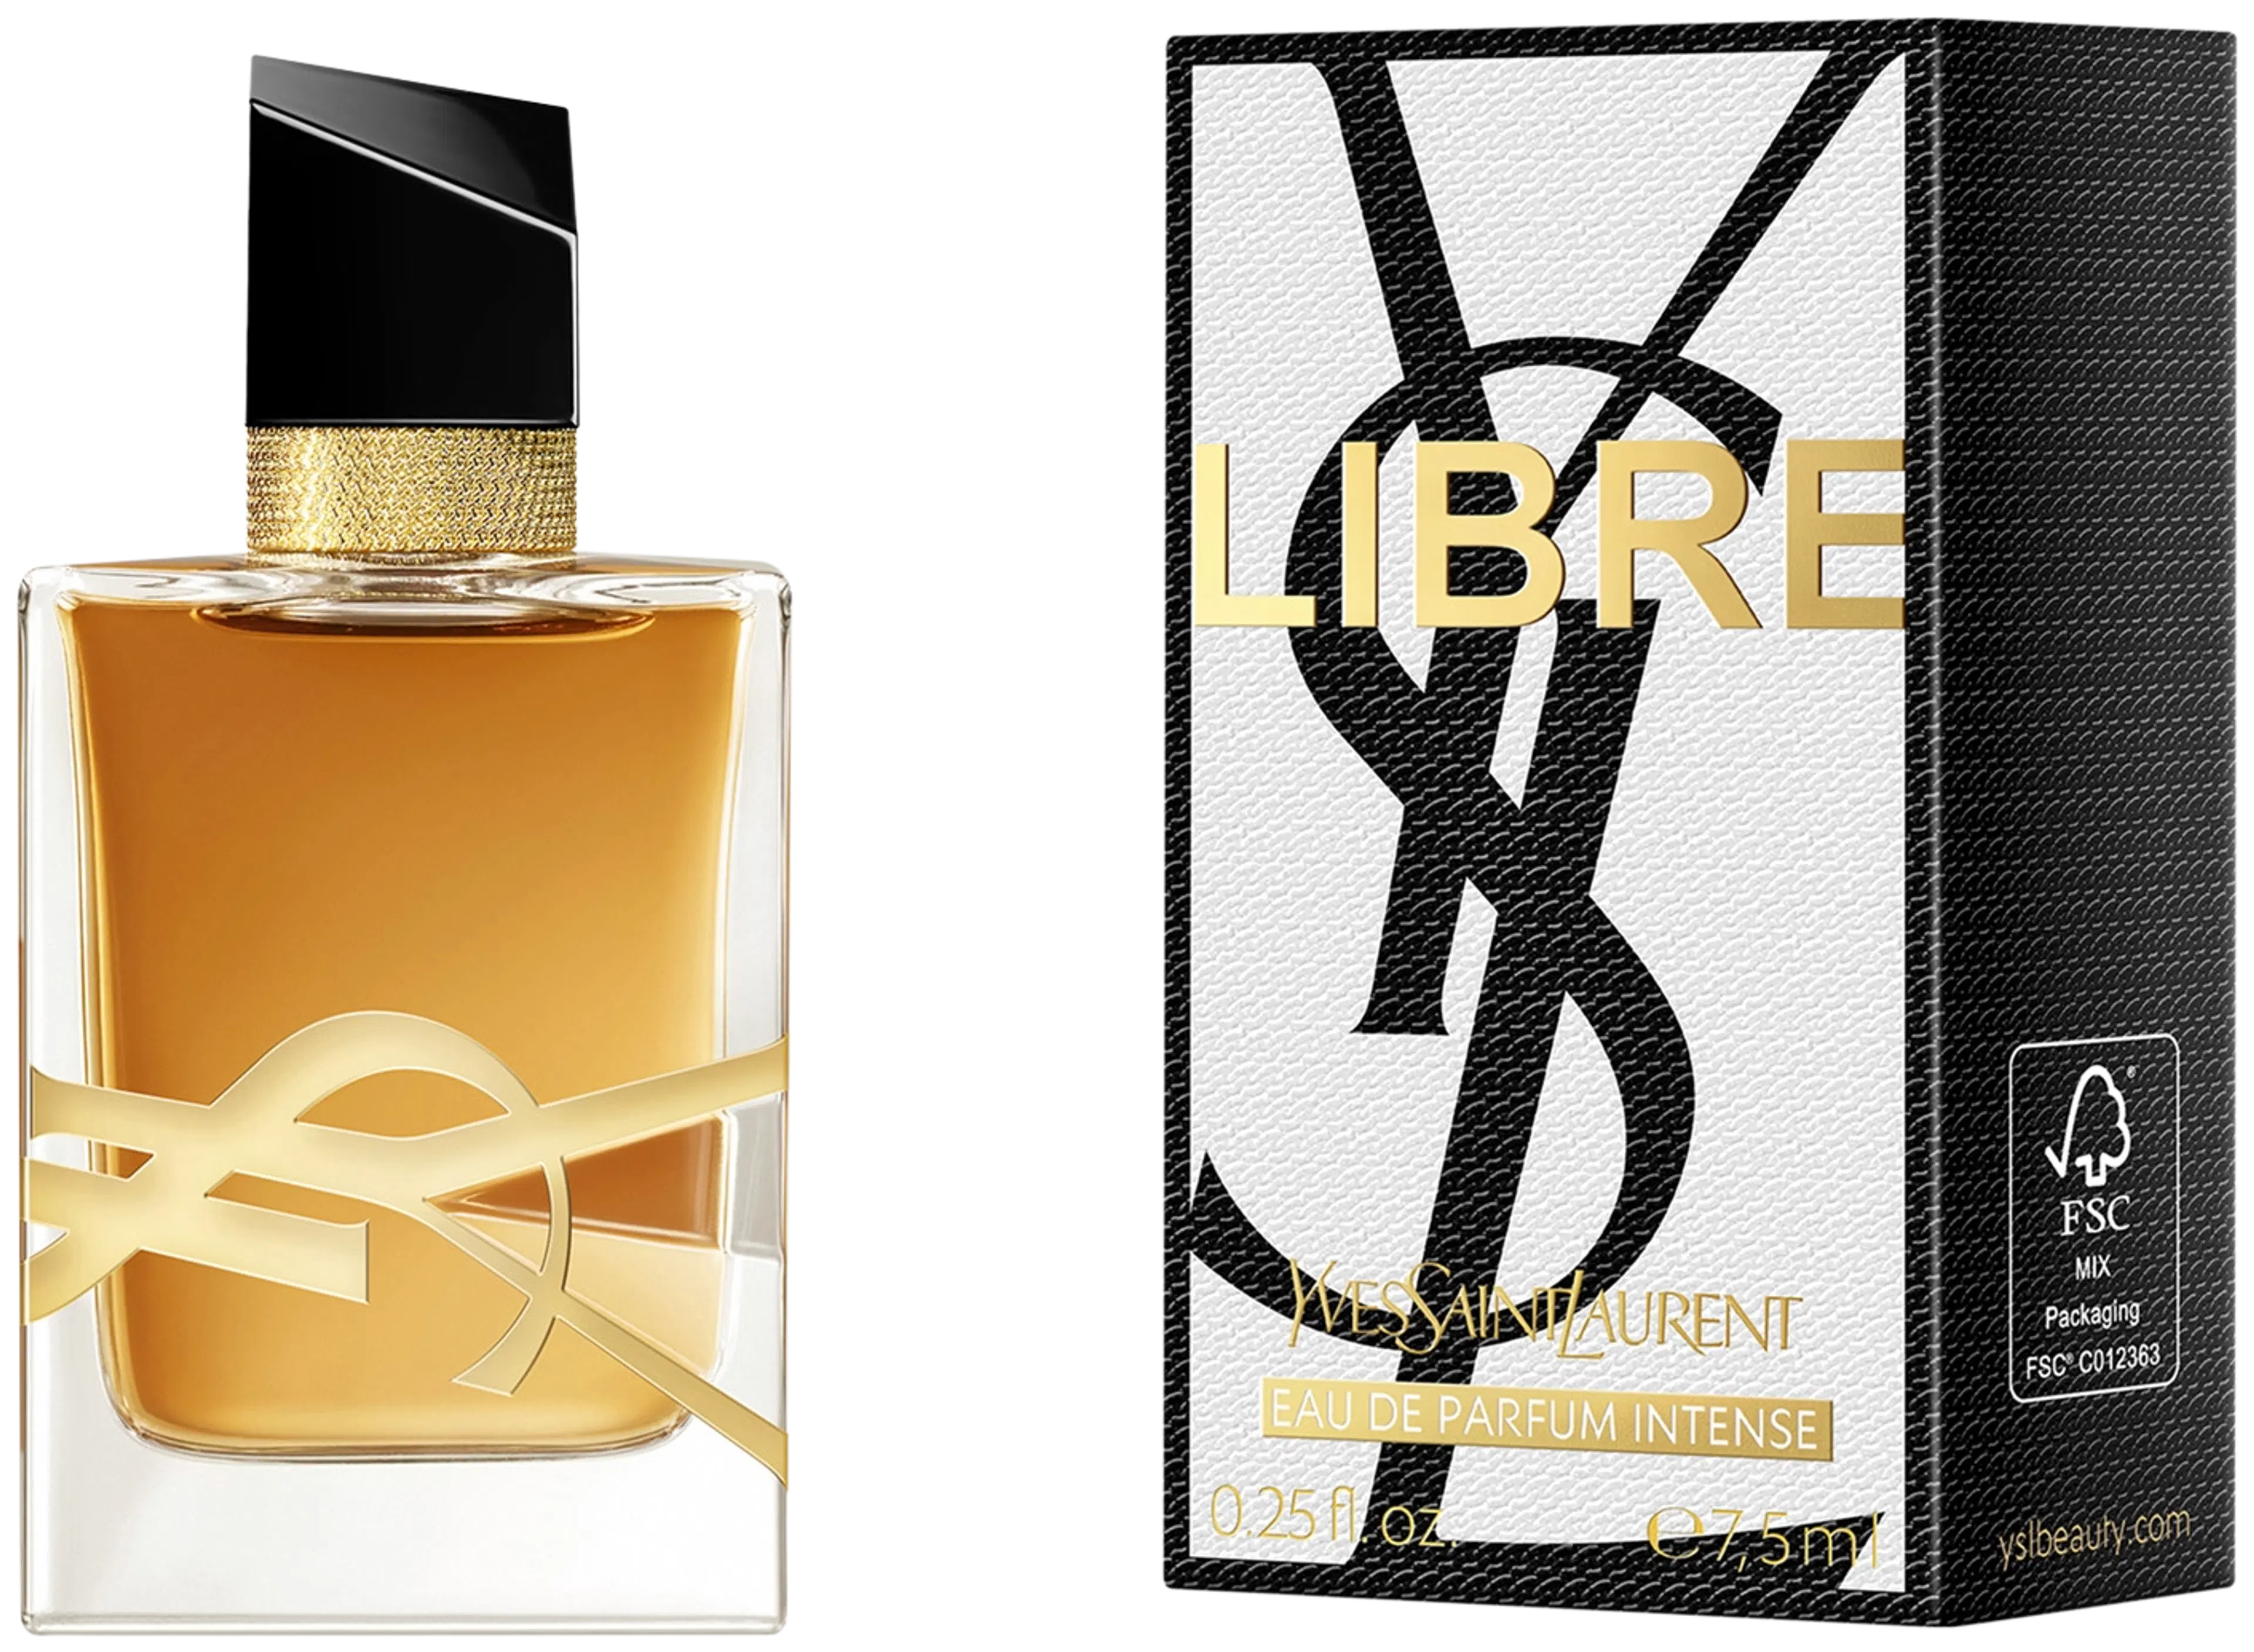 Yves Saint Laurent Libre Eau de Parfum Intense tuoksu 50 ml